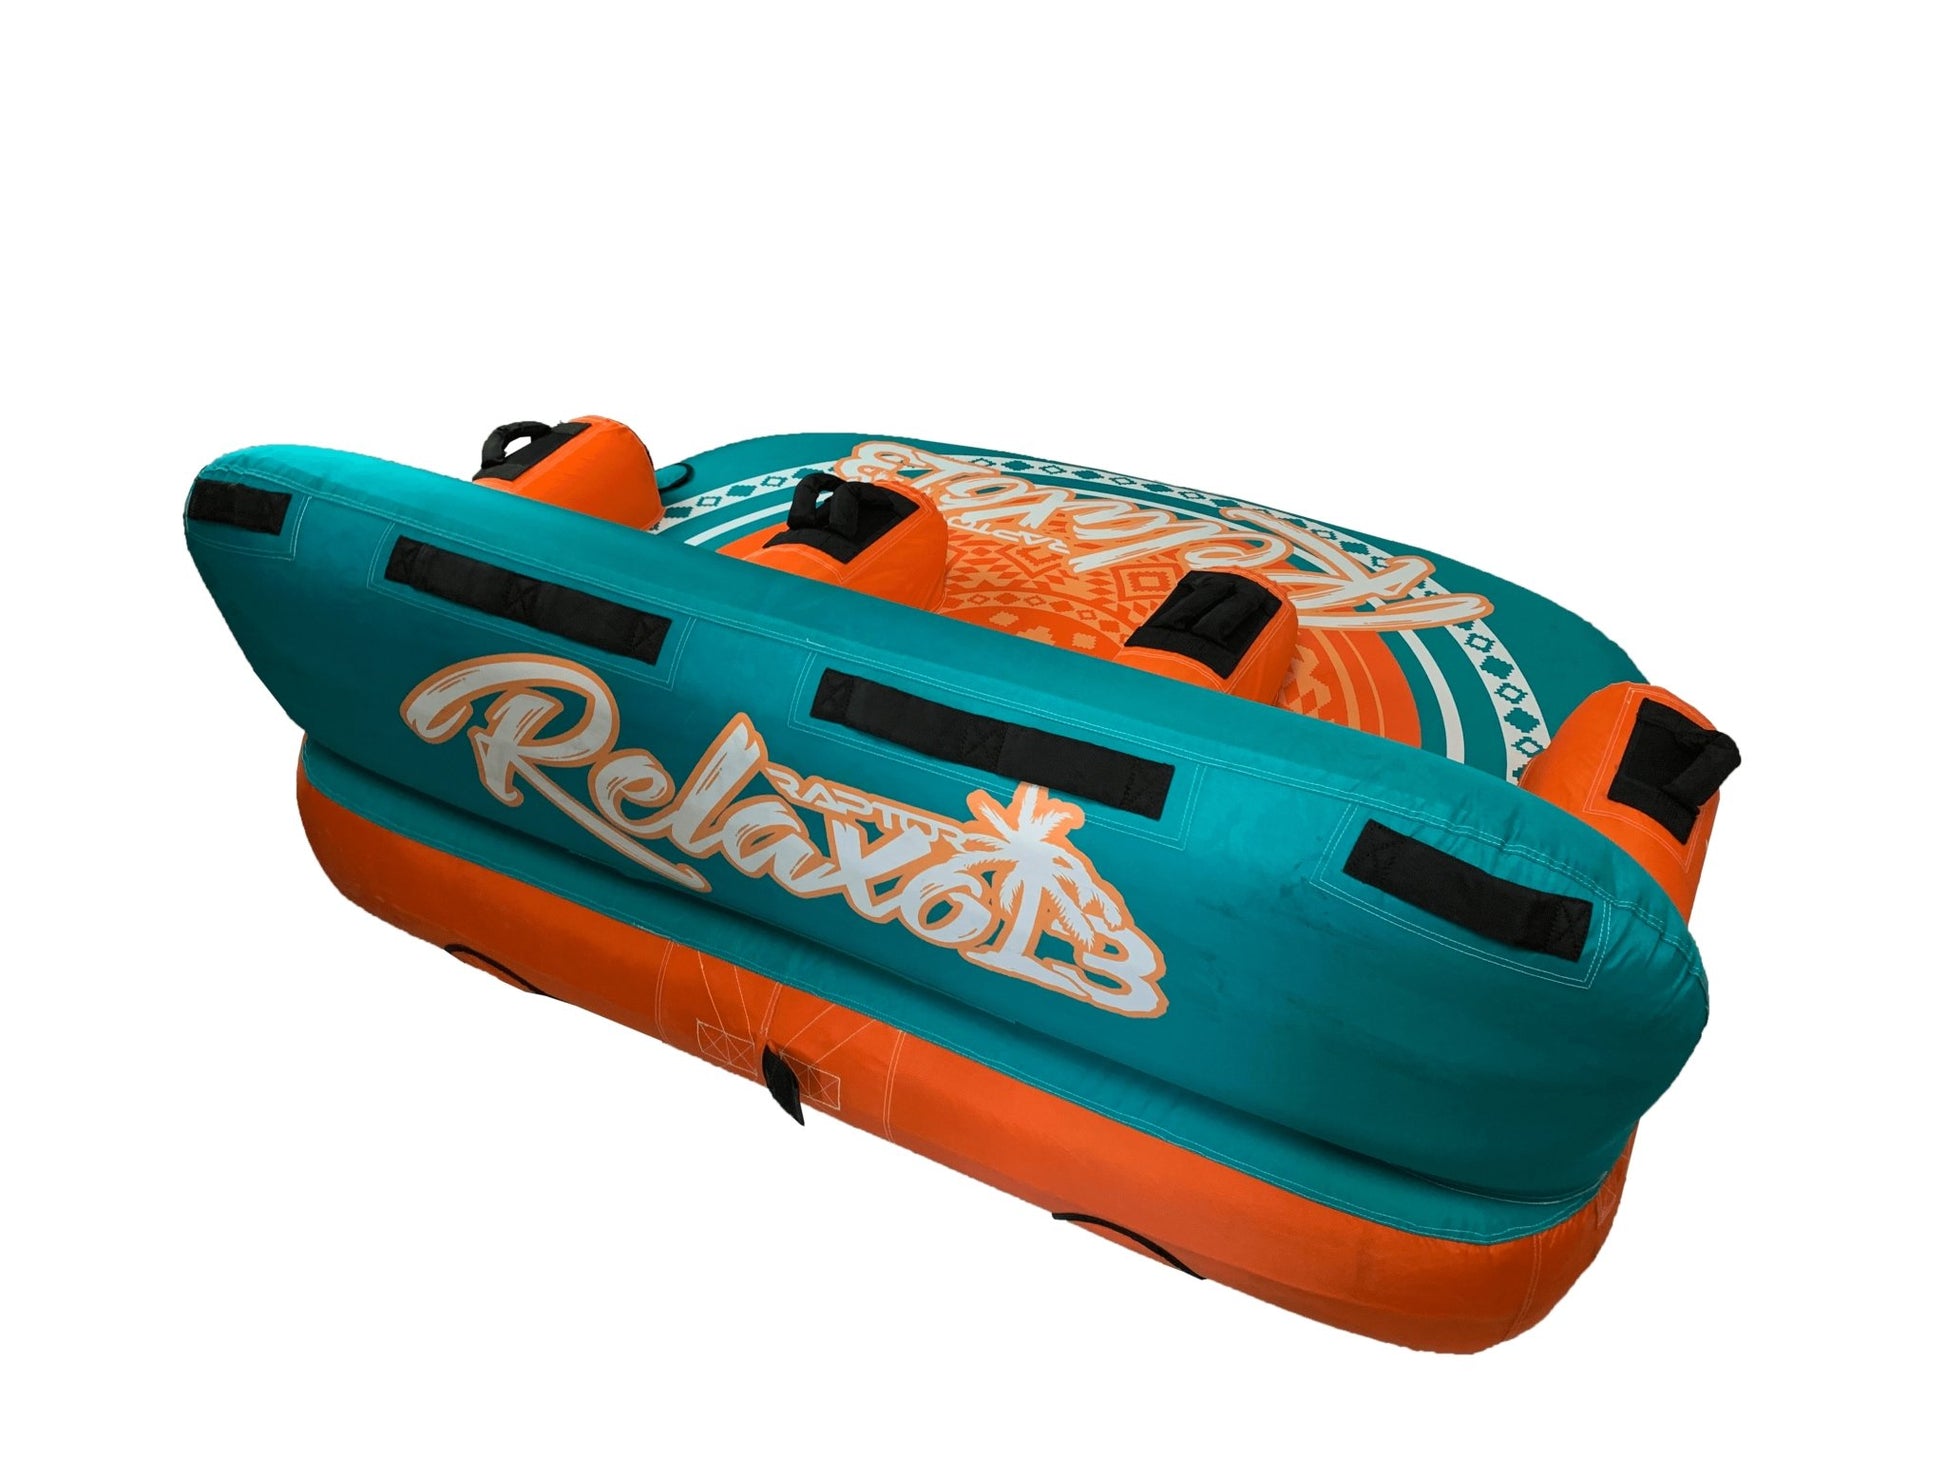 Relaxo 3 -RaptorRP3900--